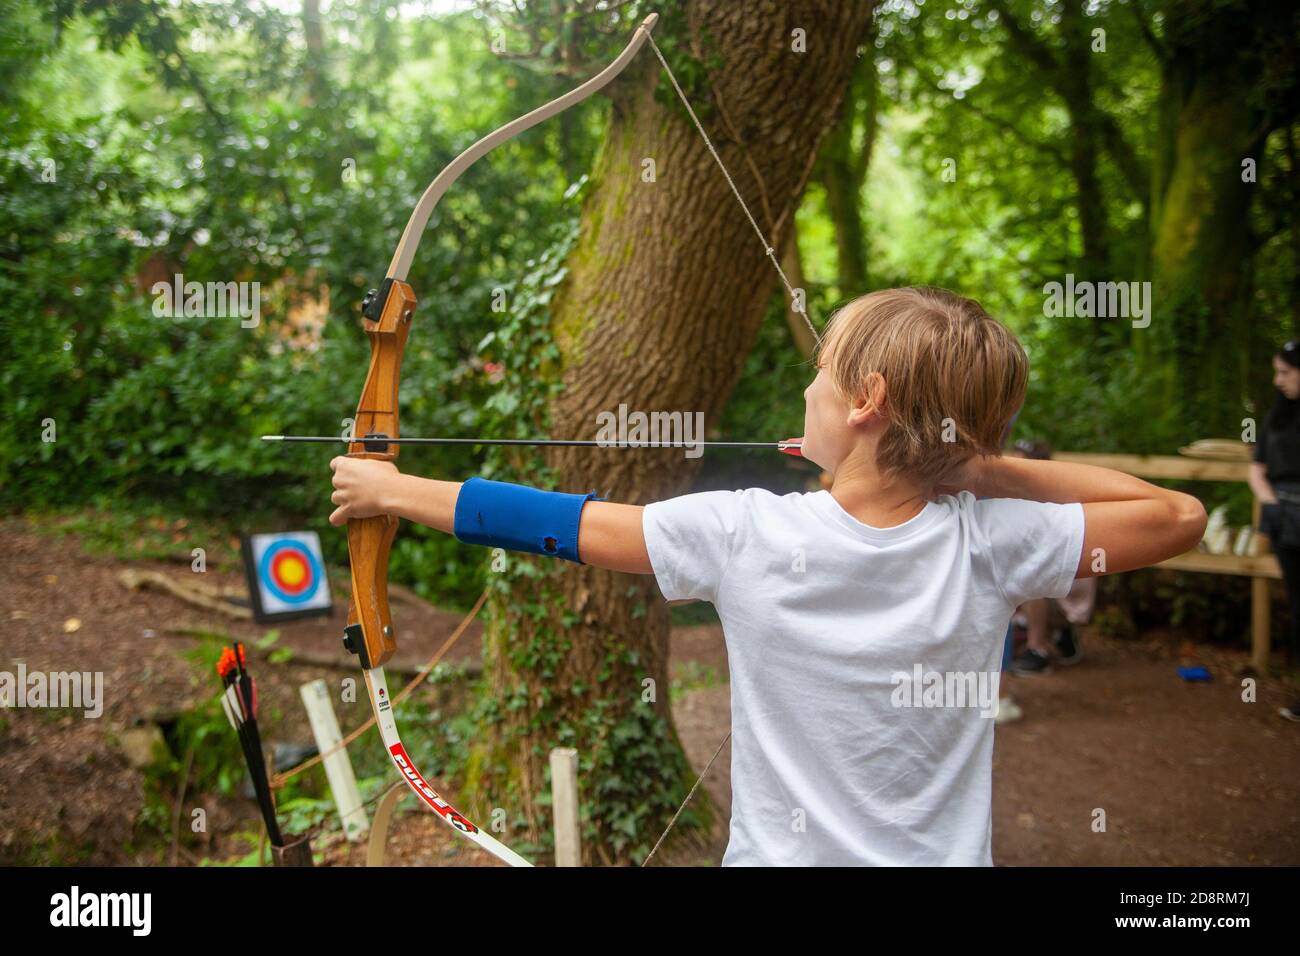 Un garçon visant une flèche à une cible Banque D'Images